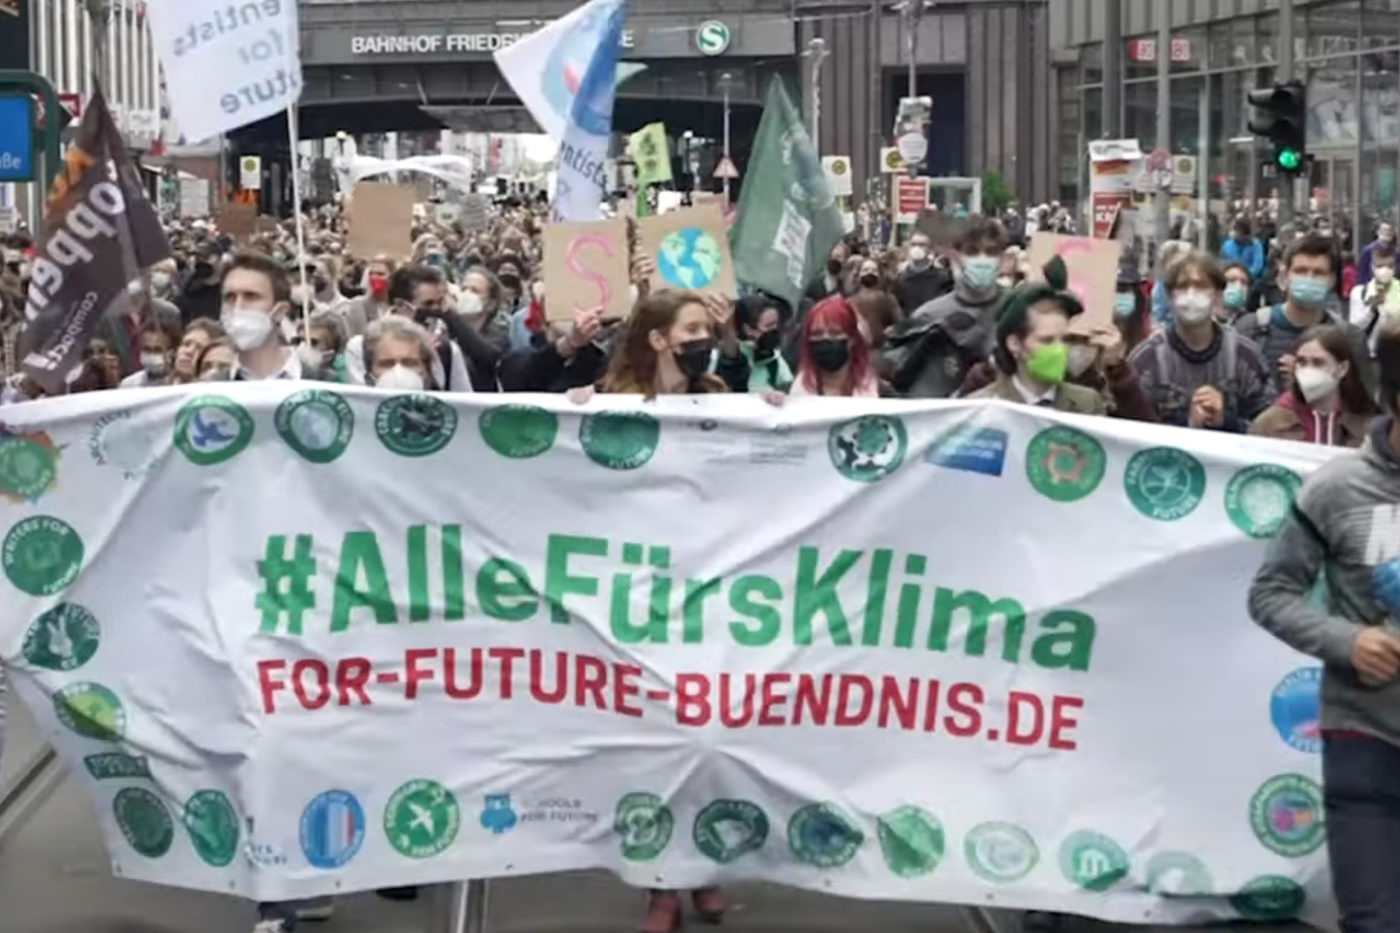 Tausende Klima-Demonstrant*innen mit Pappschildern und Fahnen laufen auf einer Straße in Berlin. Sie halten ein Banner mit der Aufschrift: #AlleFürsKlima For-Future-Buendnis.de